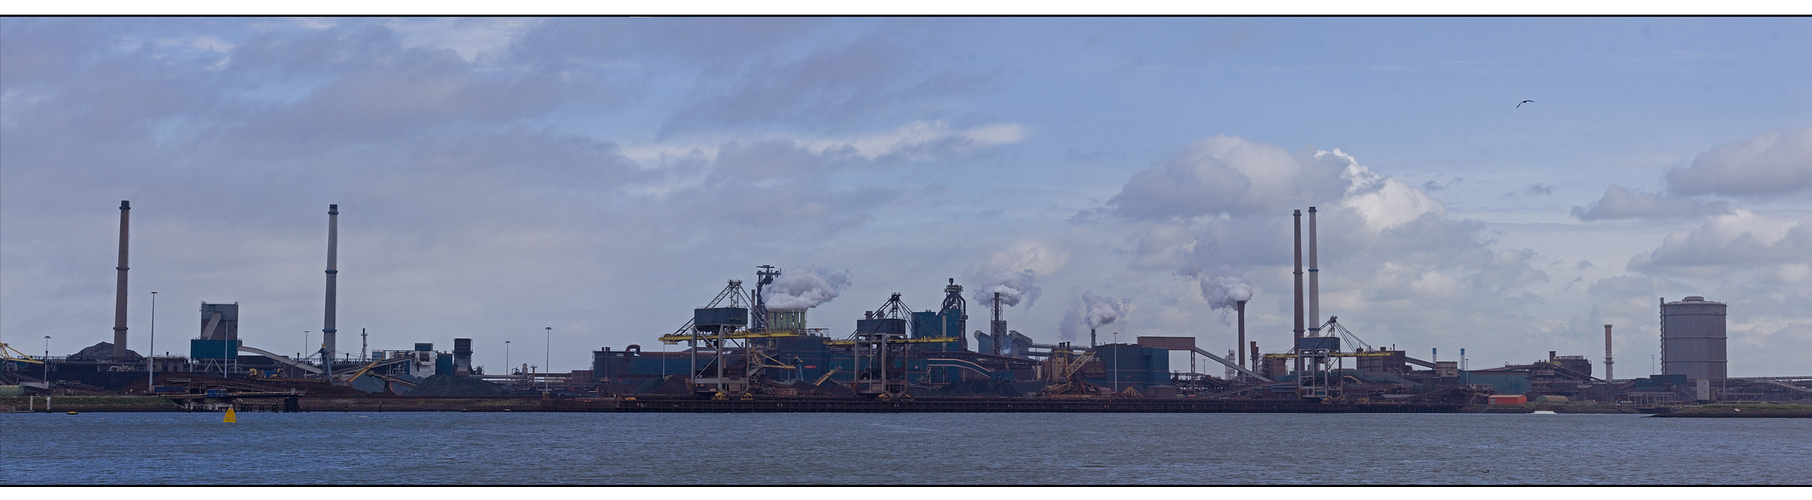 Ijmuiden - Industries am Hafen